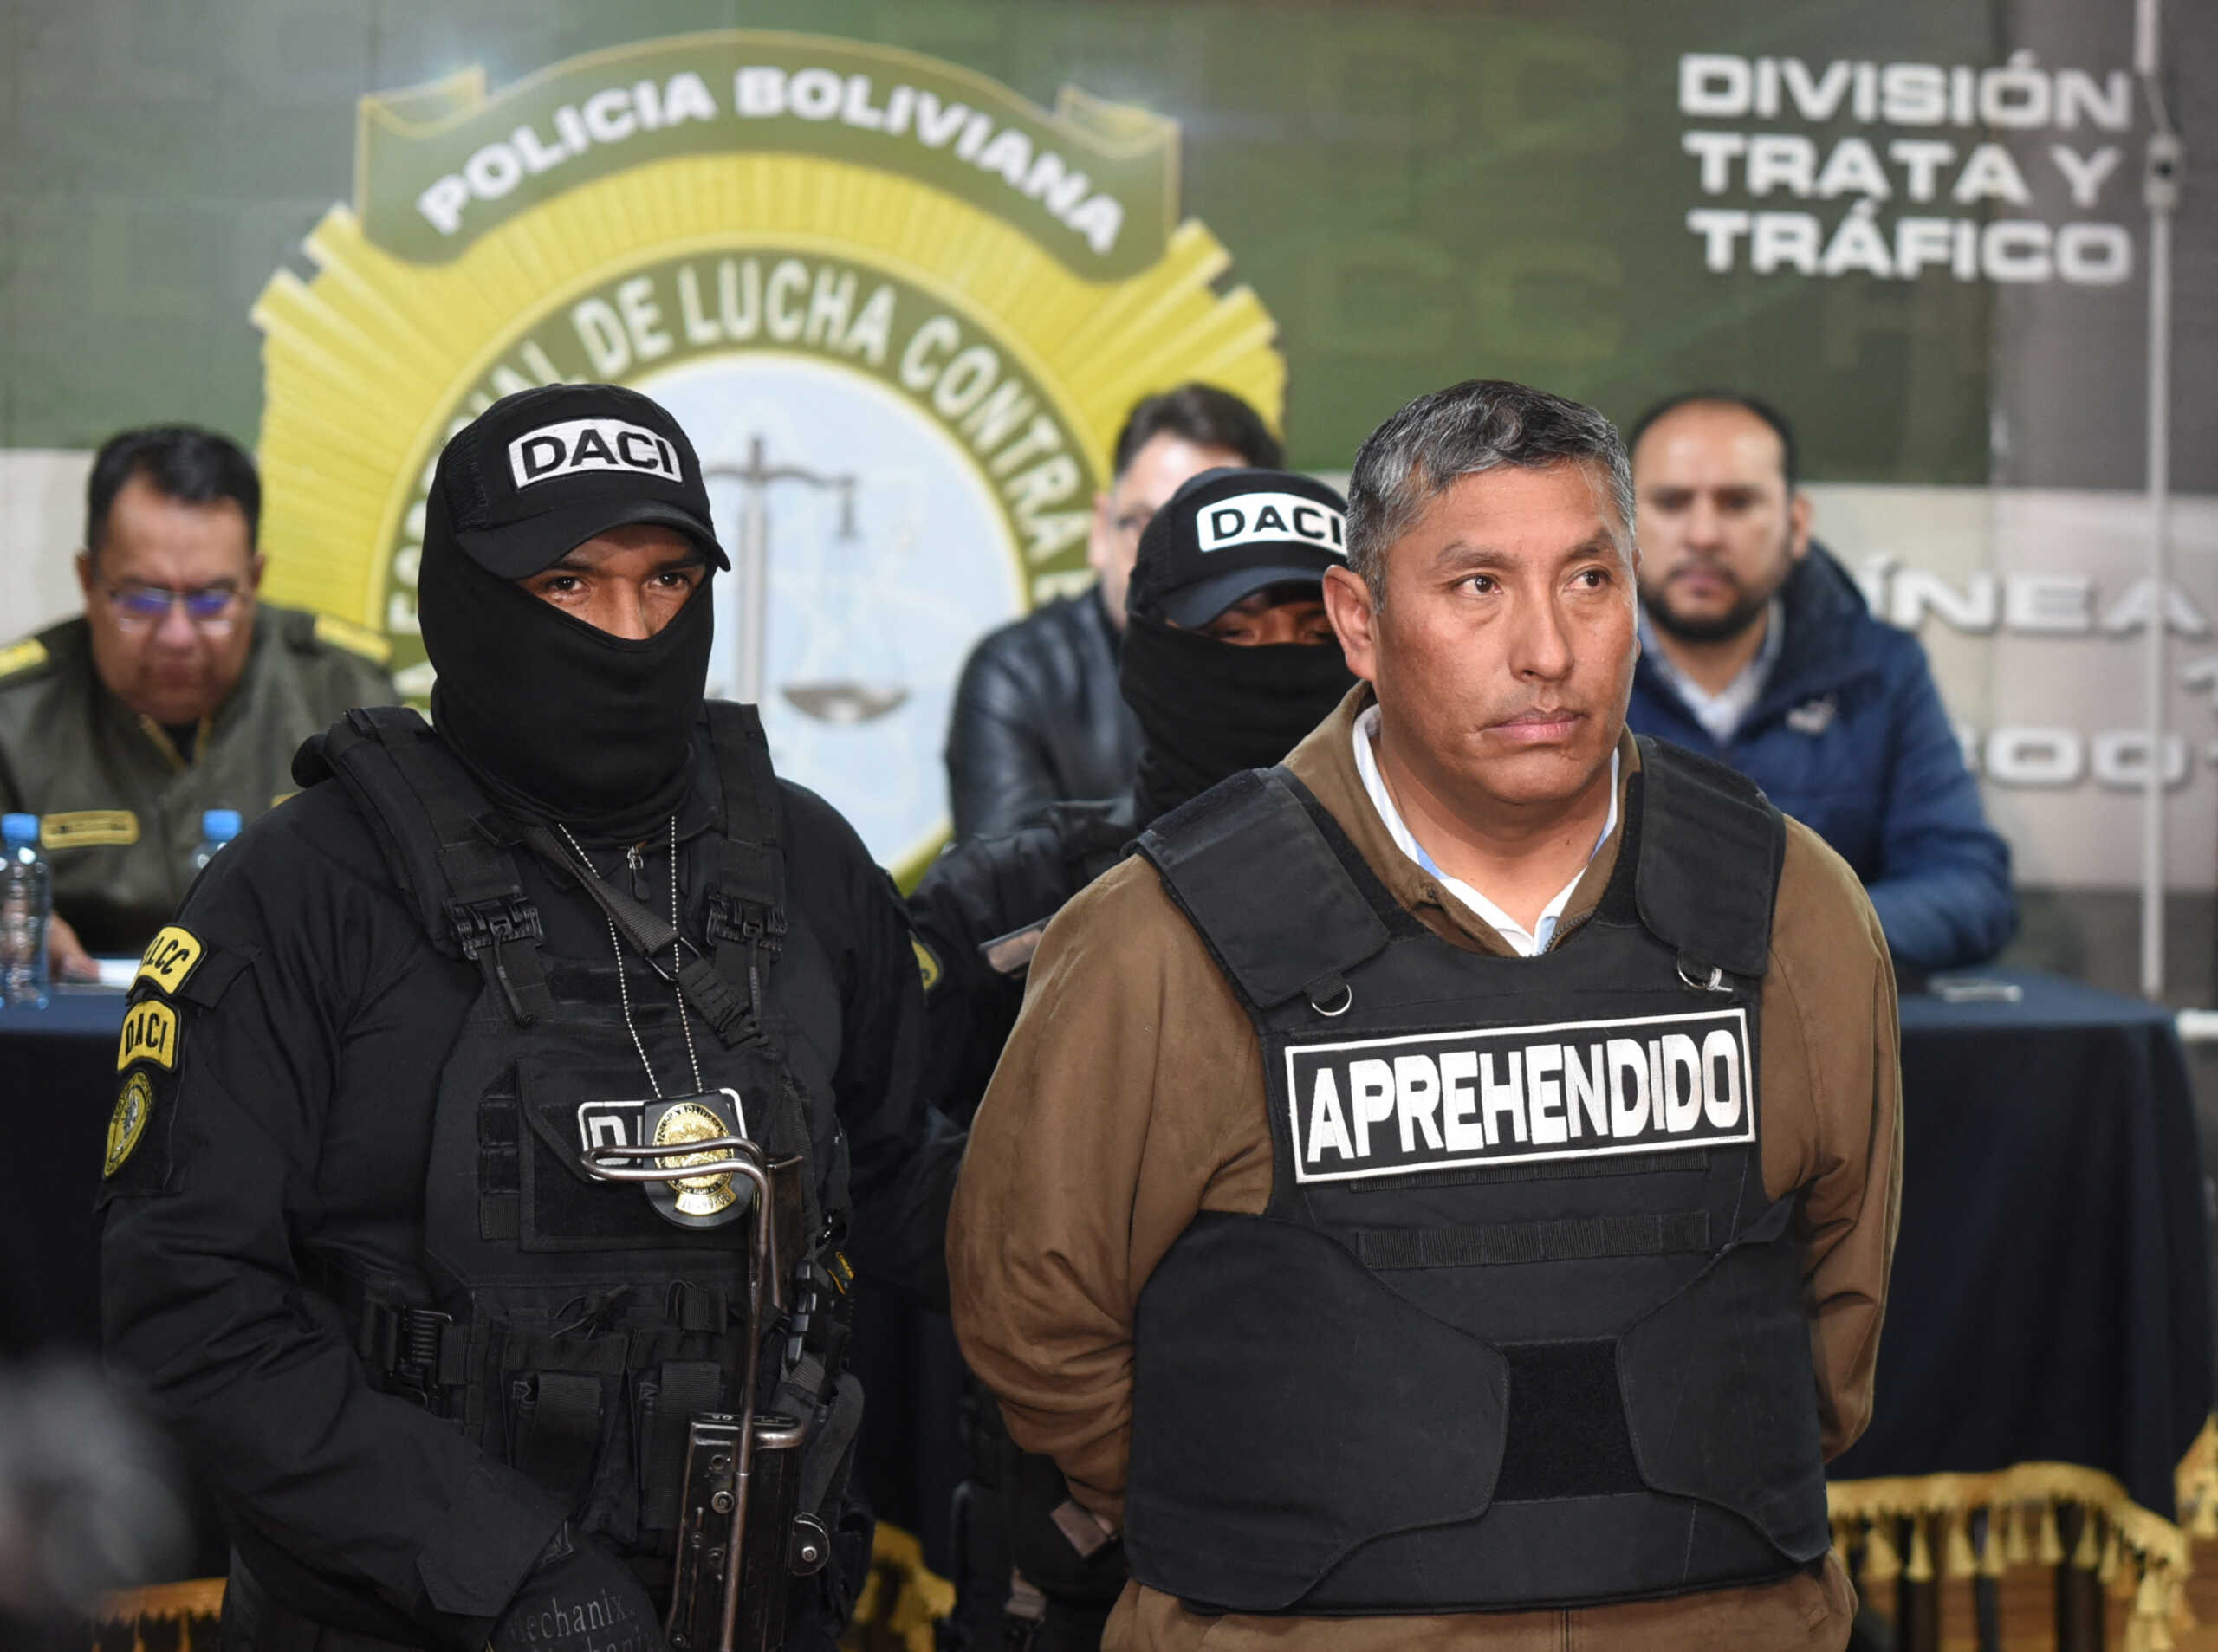 Βολιβία: 12 στρατιωτικοί συνελήφθησαν για απόπειρα πραξικοπήματος